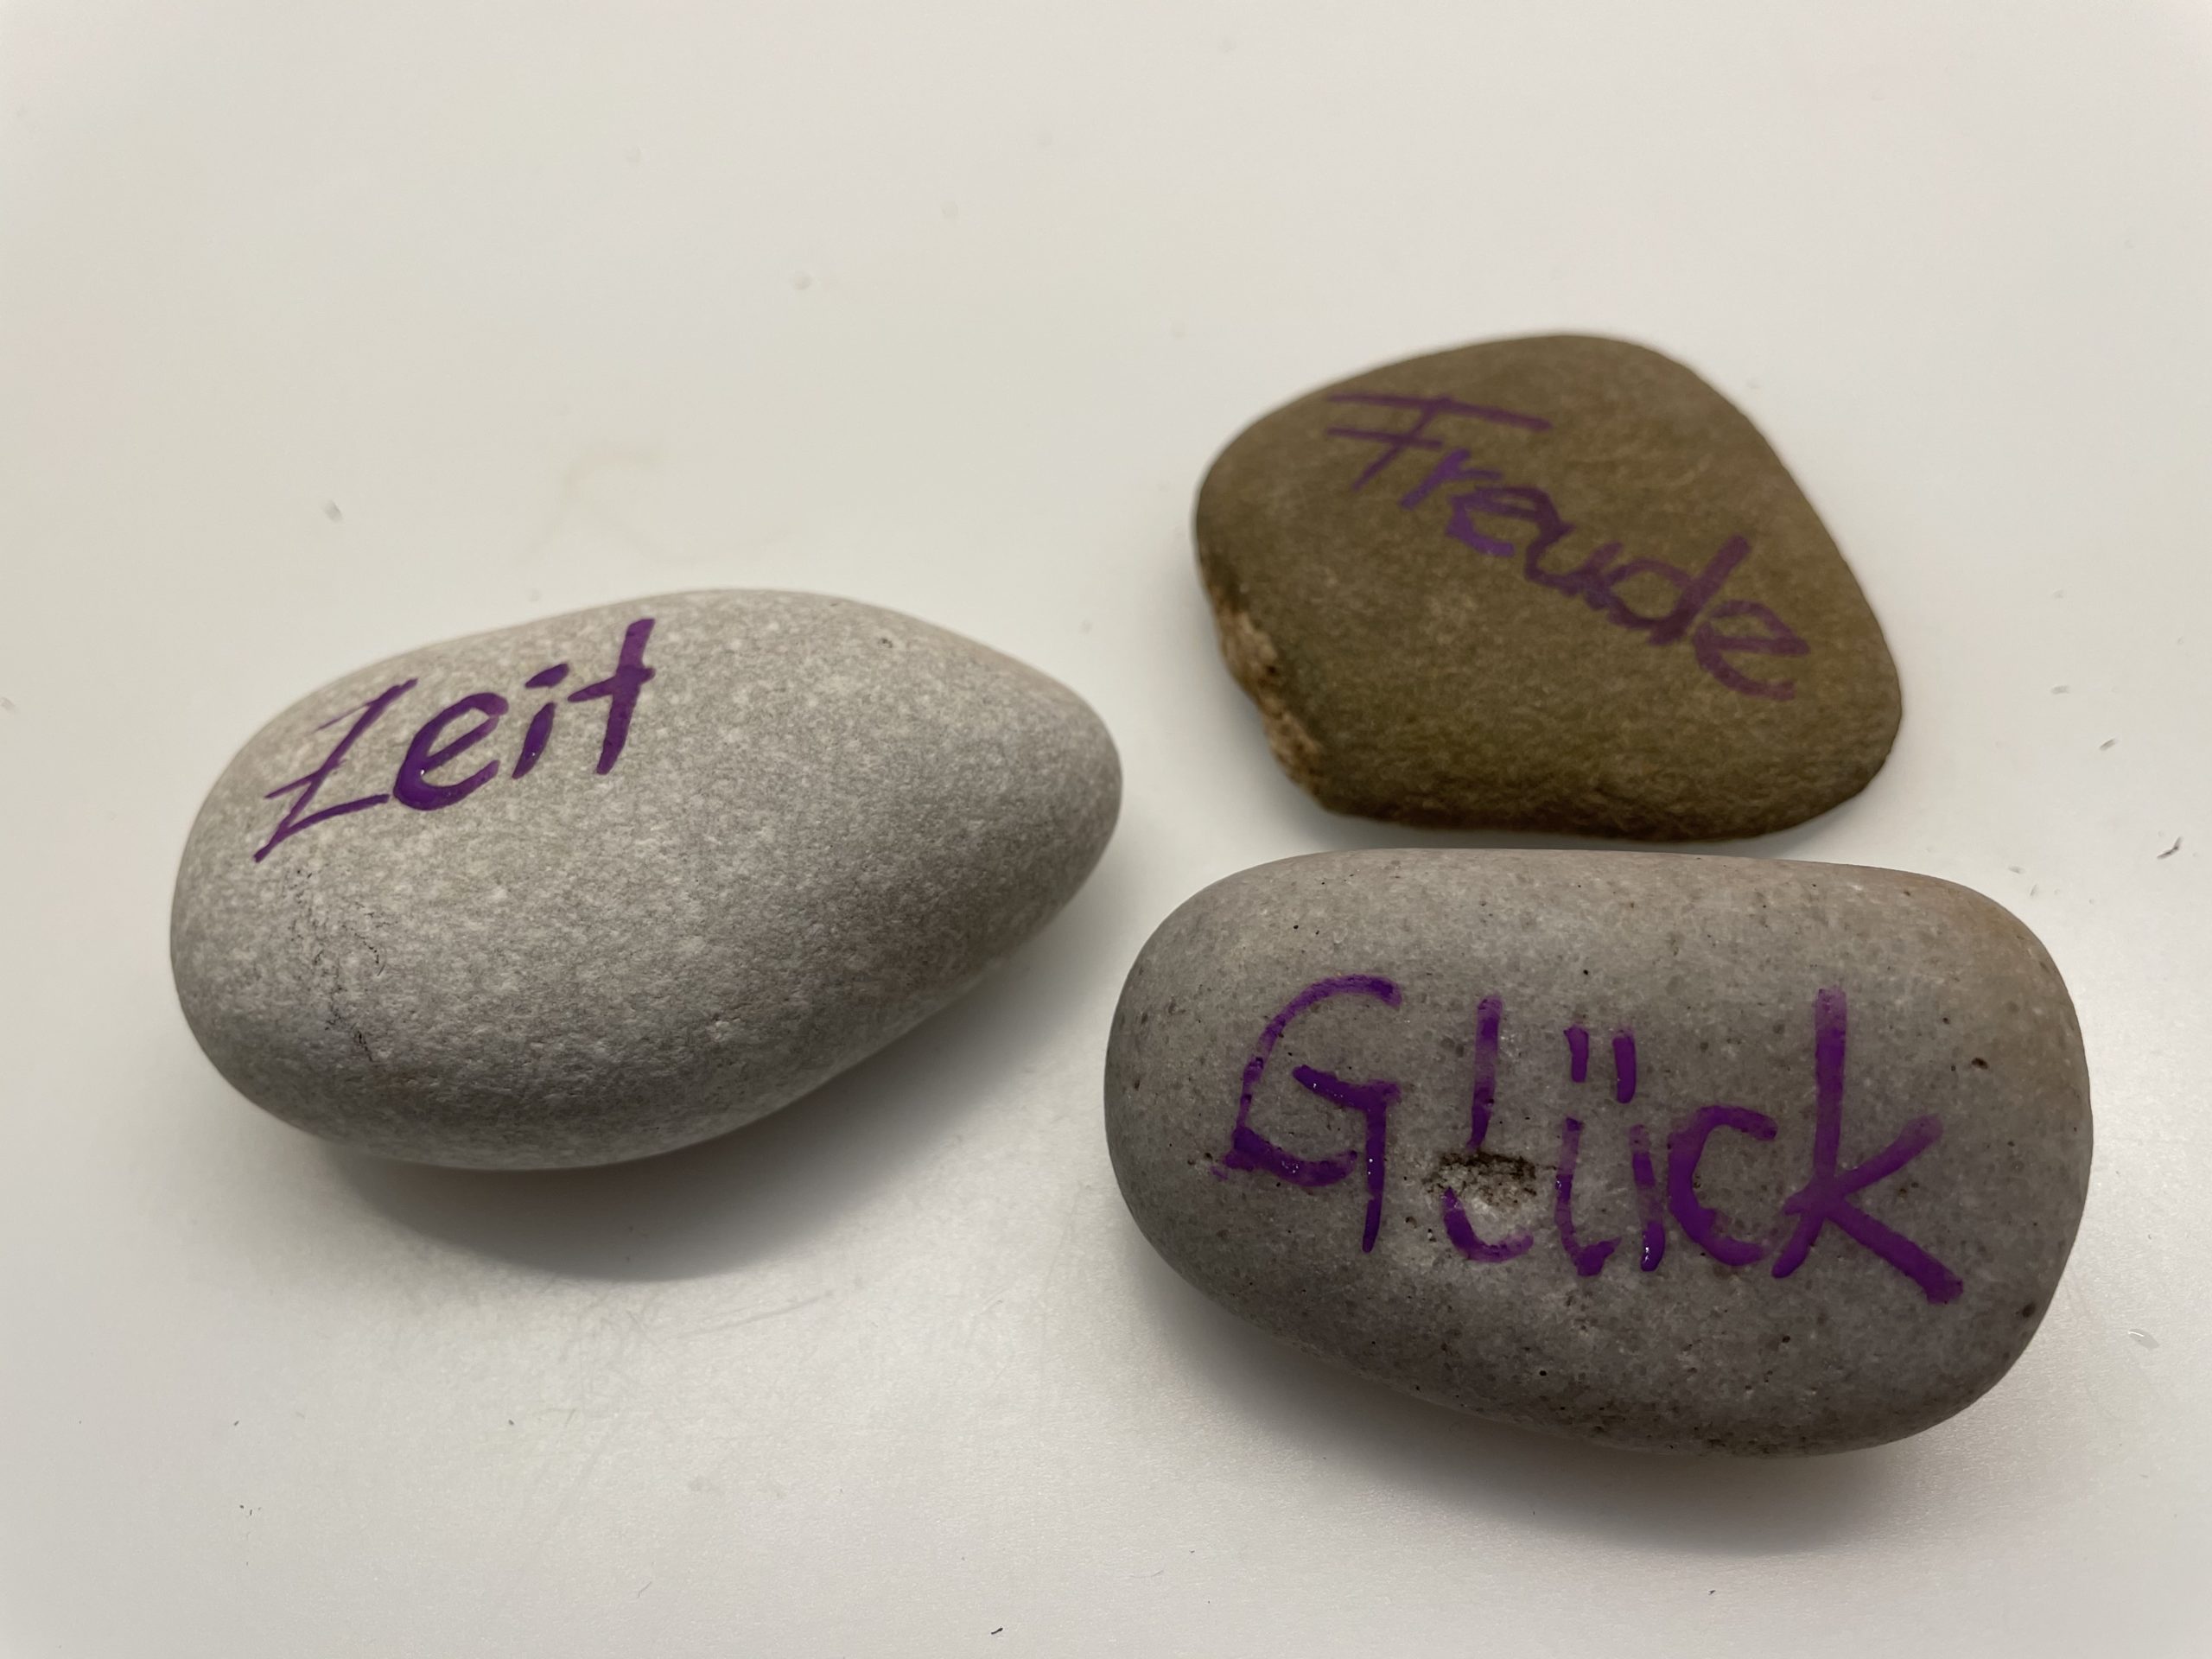 Bild zum Schritt 6 für das Bastel- und DIY-Abenteuer für Kinder: 'Oder ihr beschriftet die Steine mit Filzstiften.'